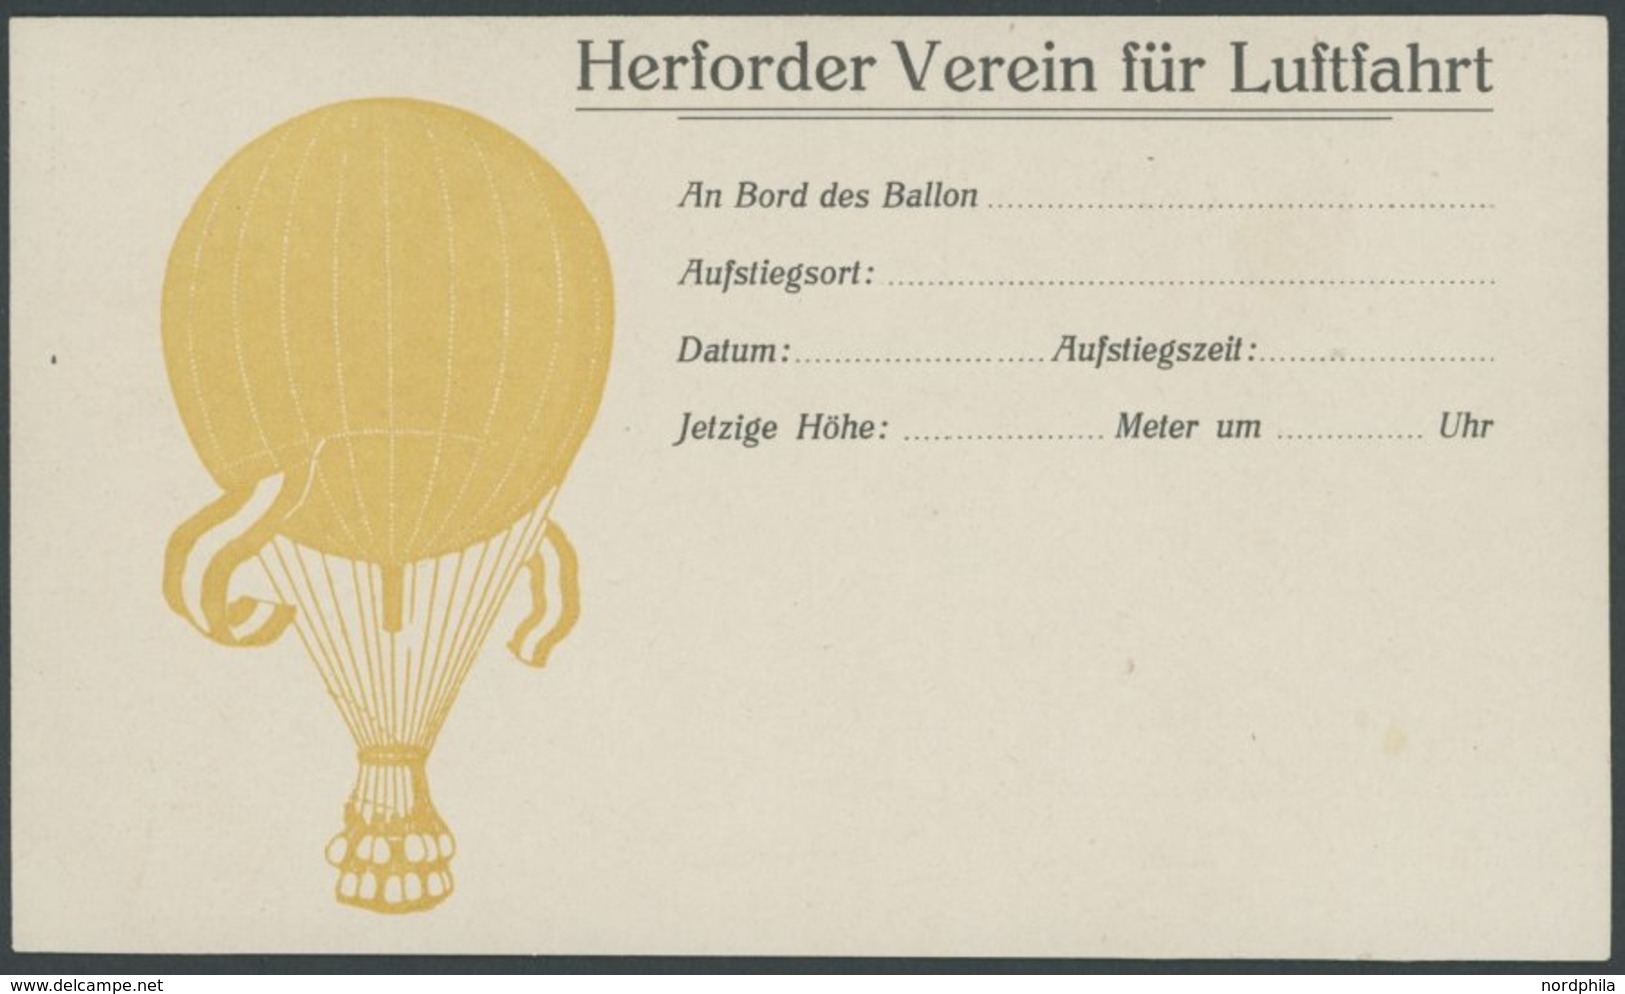 1911/2, HERFORDER VEREIN FÜR LUFTFAHRT, Ungebrauchte Ballon-Finderkarte, Karte Oben Waagerecht Gekürzt Sonst Pracht -> A - Fesselballons